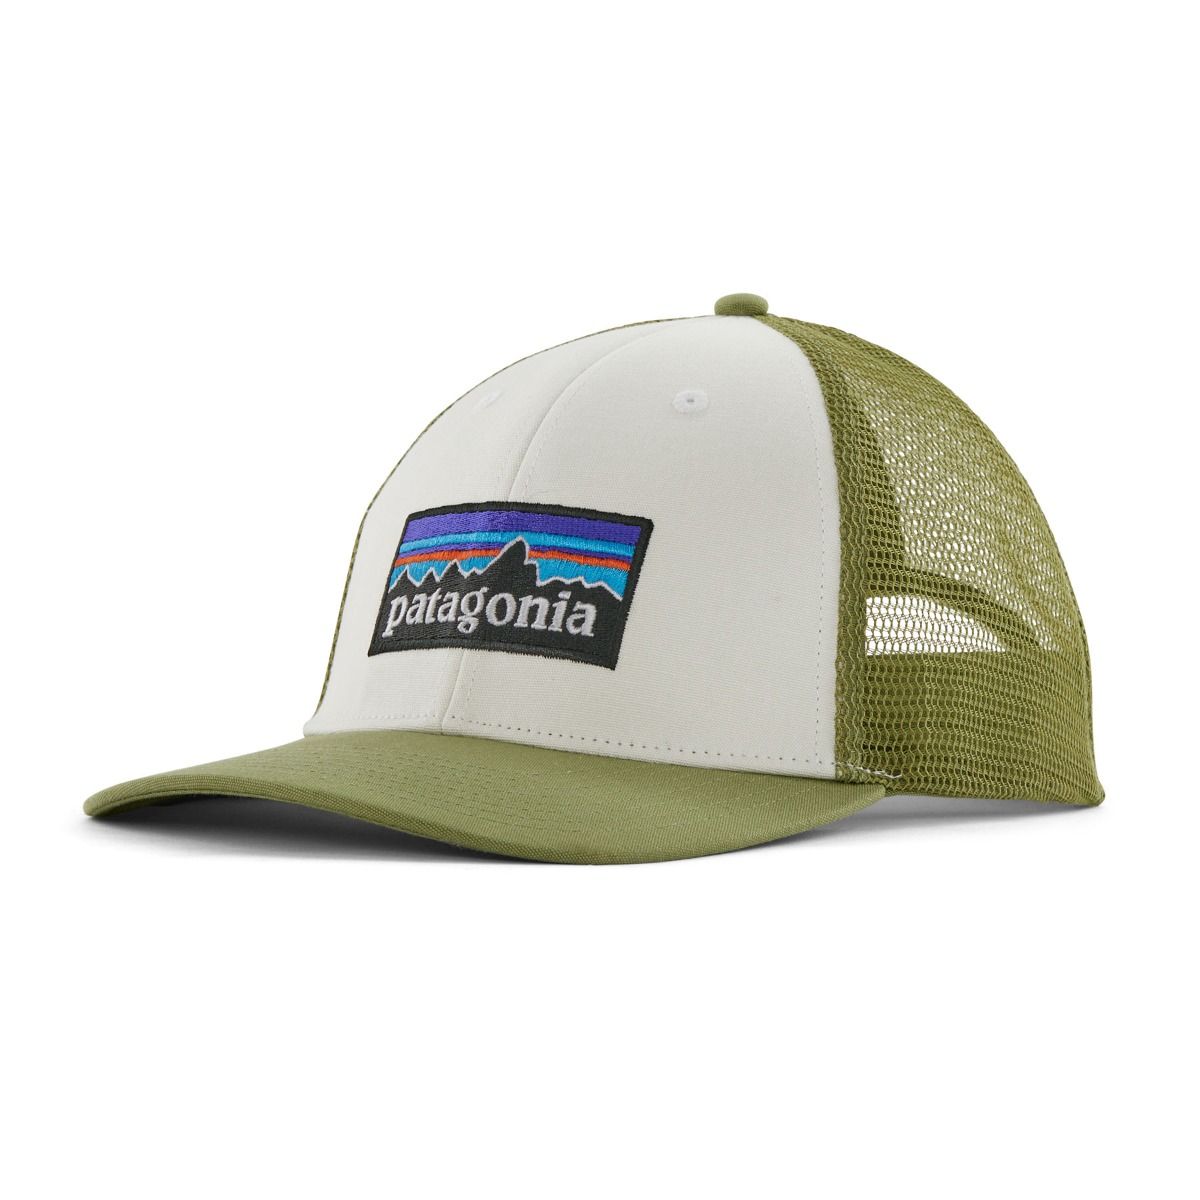 Patagonia - p6 logo trucker hat